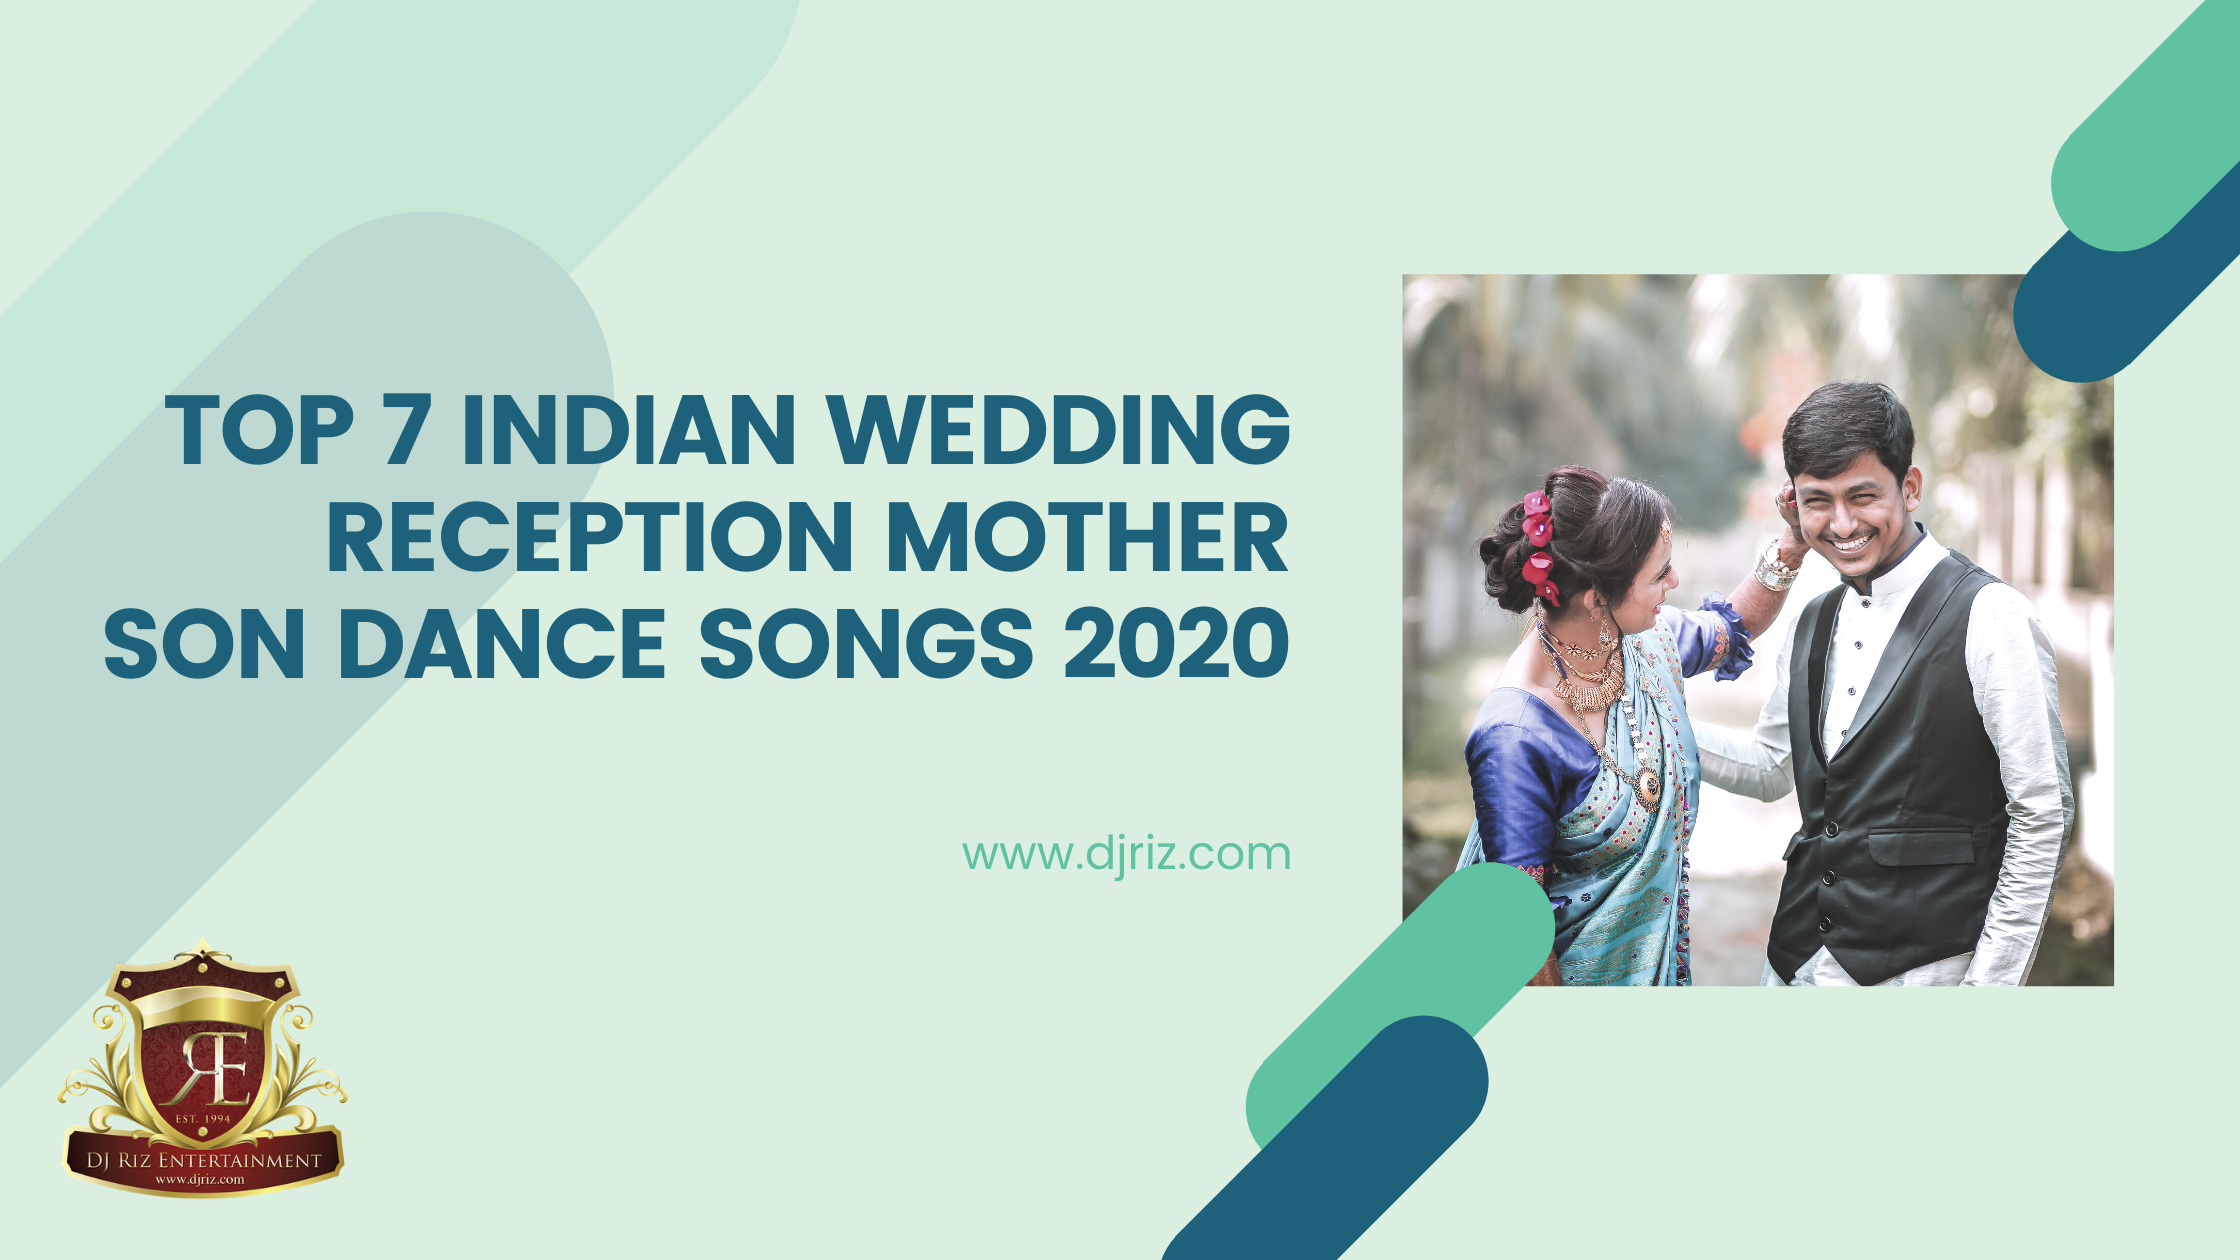 Best Wedding Songs 2020 - Top 2020 Wedding Love Songs - Greatest